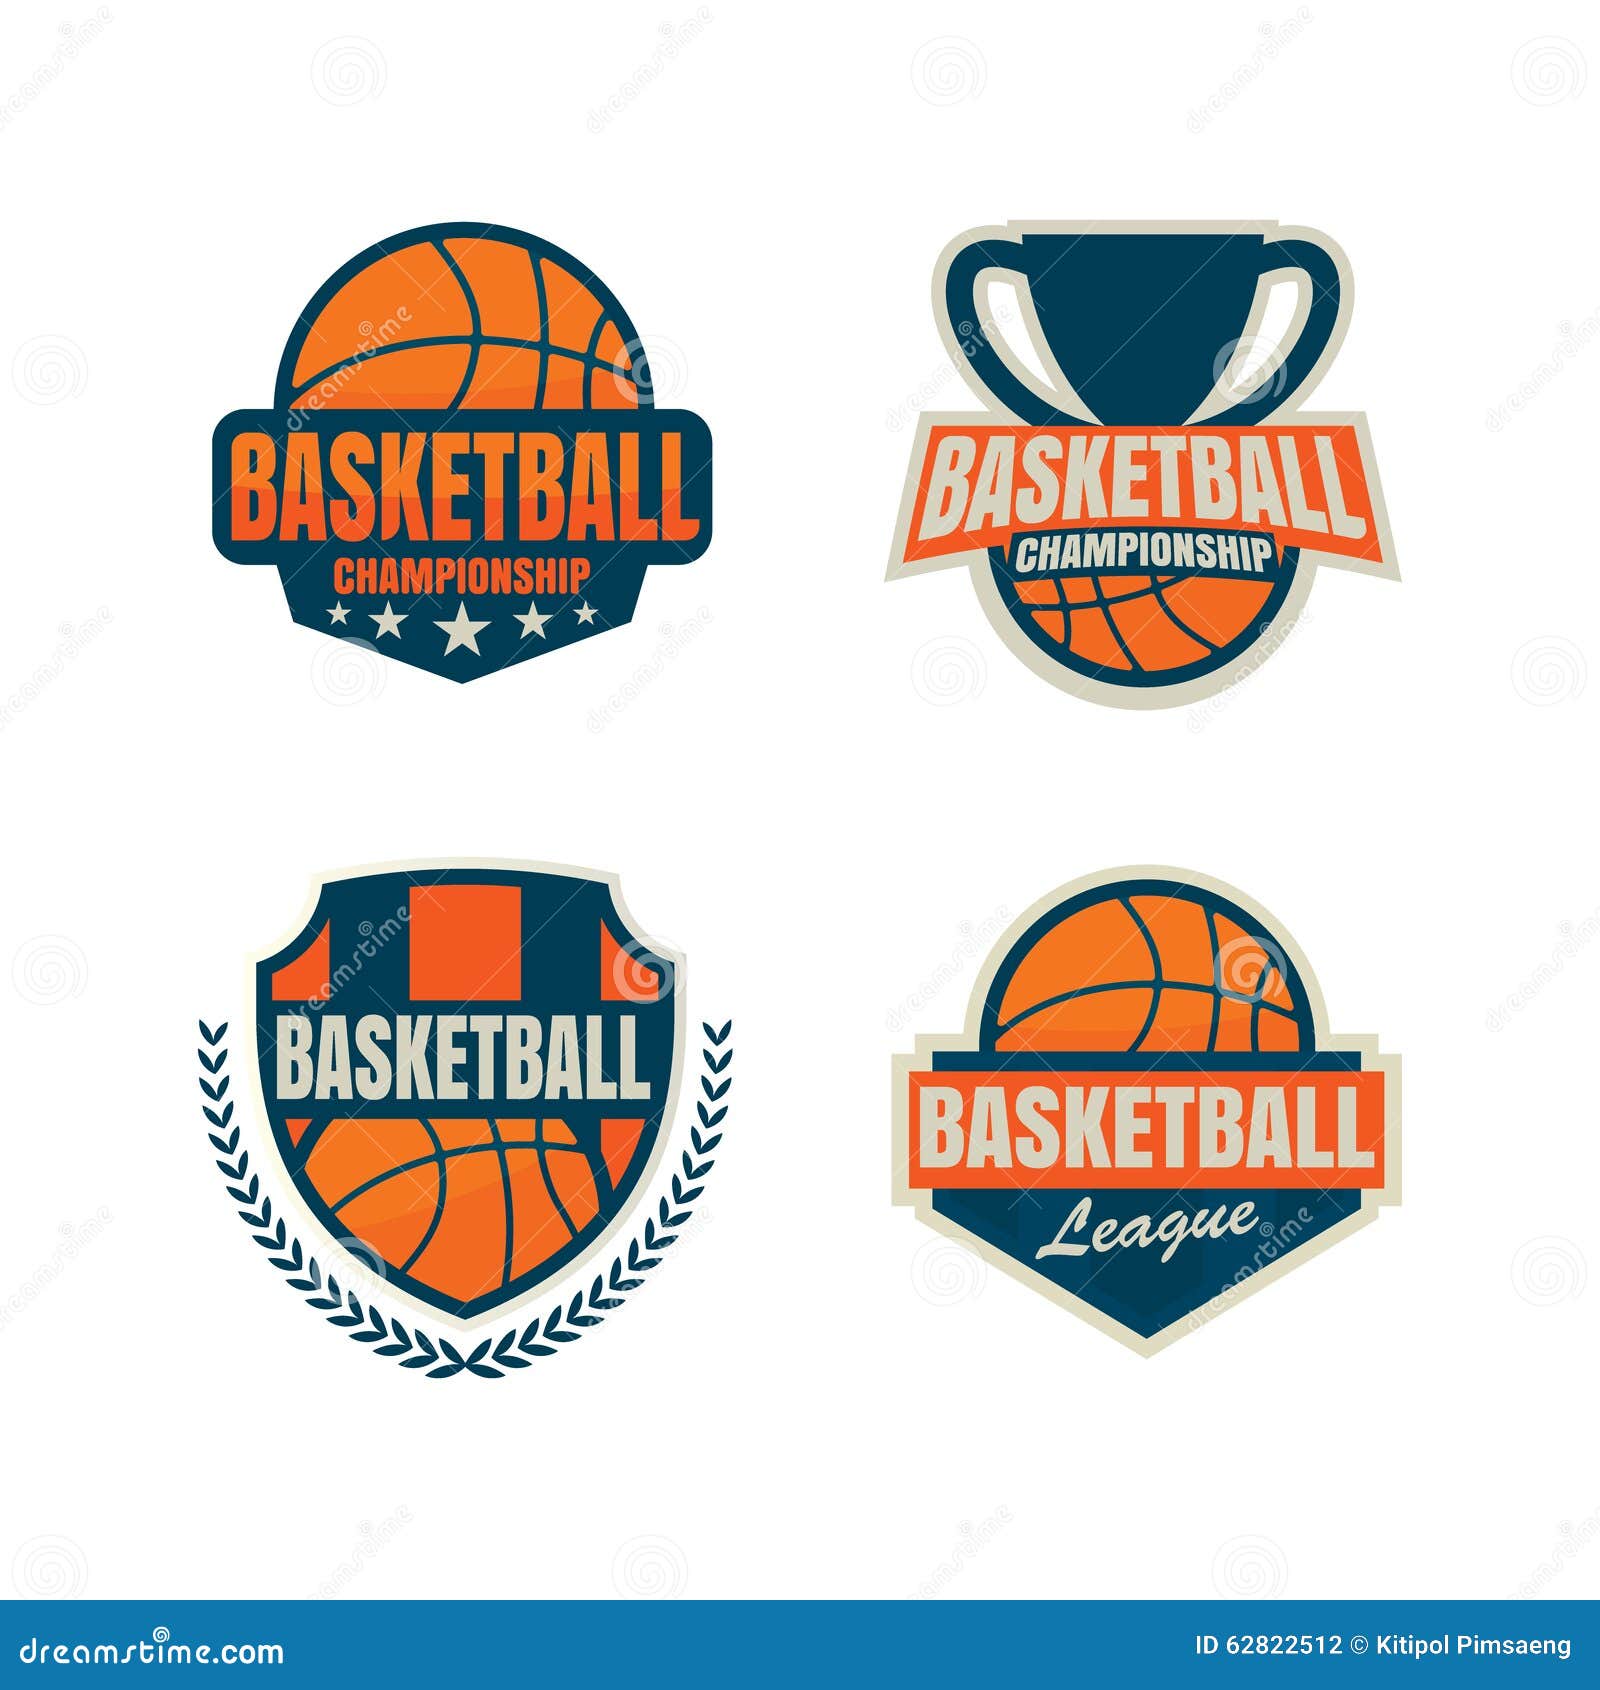 Basketball Logo Template Stock Vector - Image: 628225121300 x 1390